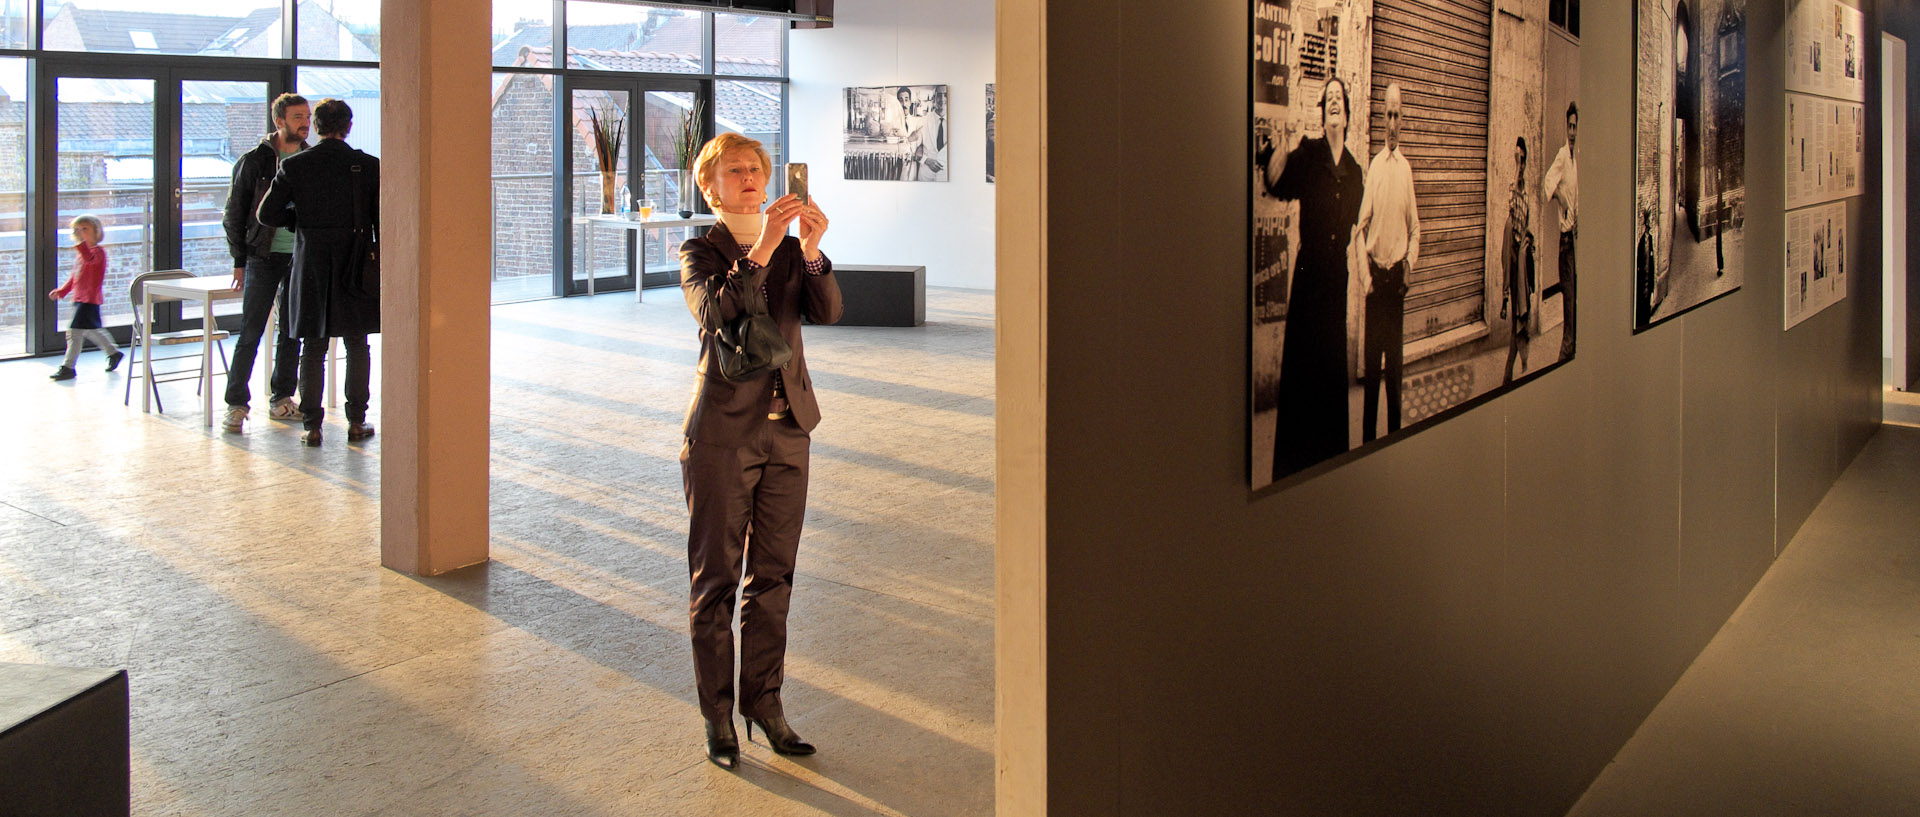 Vernissage de l'exposition des photos de William Klein, avec le photographe et Martine Aubry, Maison de la Photographie, à Lille.